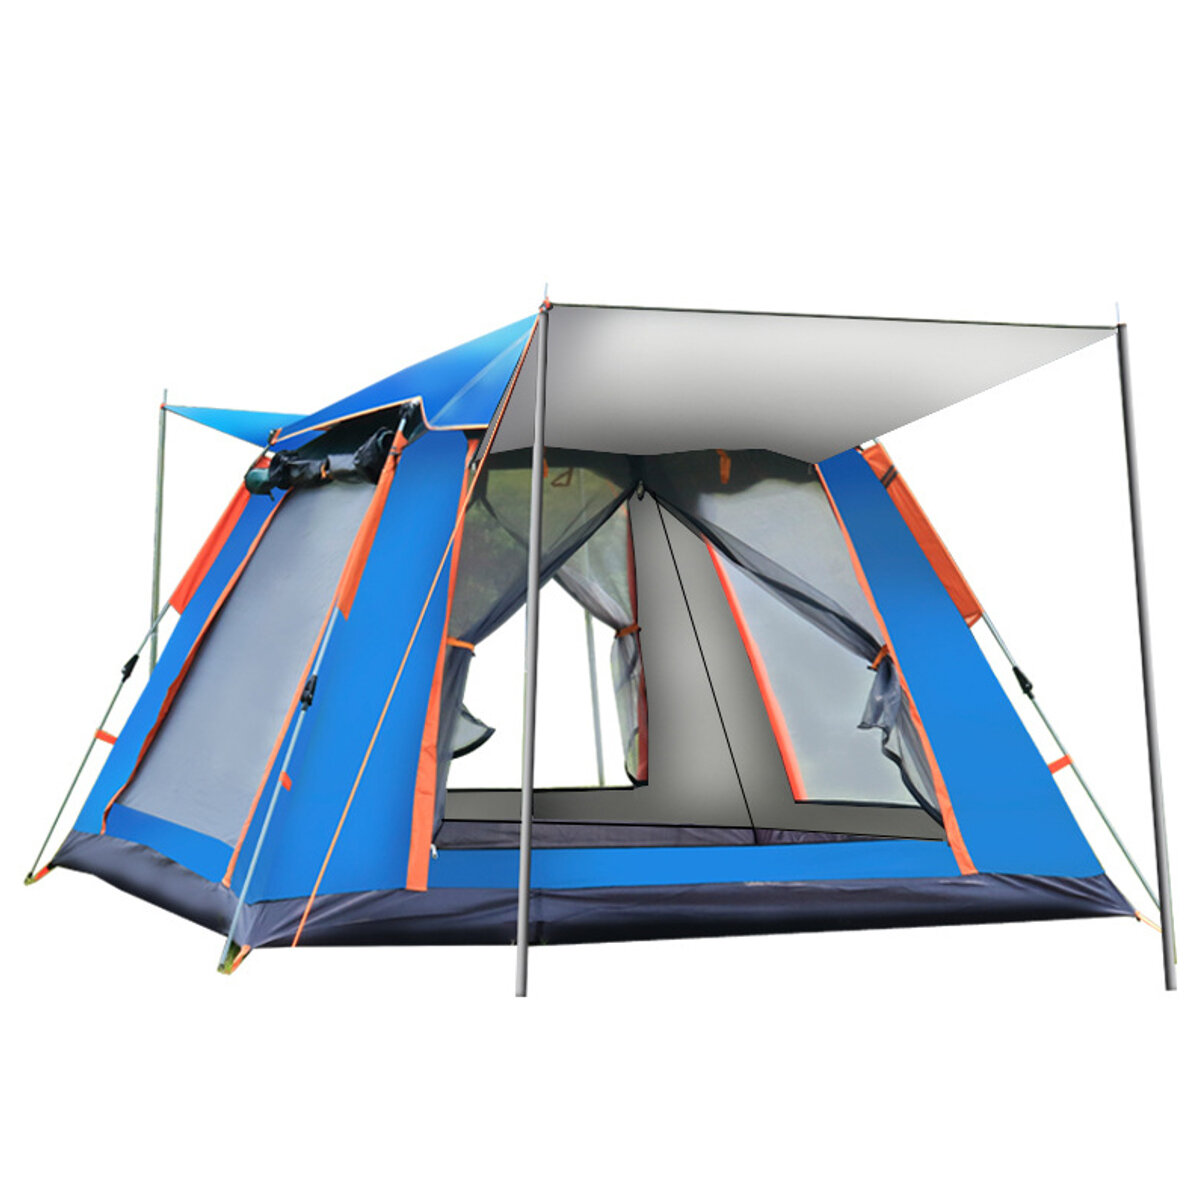 4-5人の完全自動セットアップテントUV保護された家族のピクニック旅行サンシェルター屋外防雨防風キャンプテント